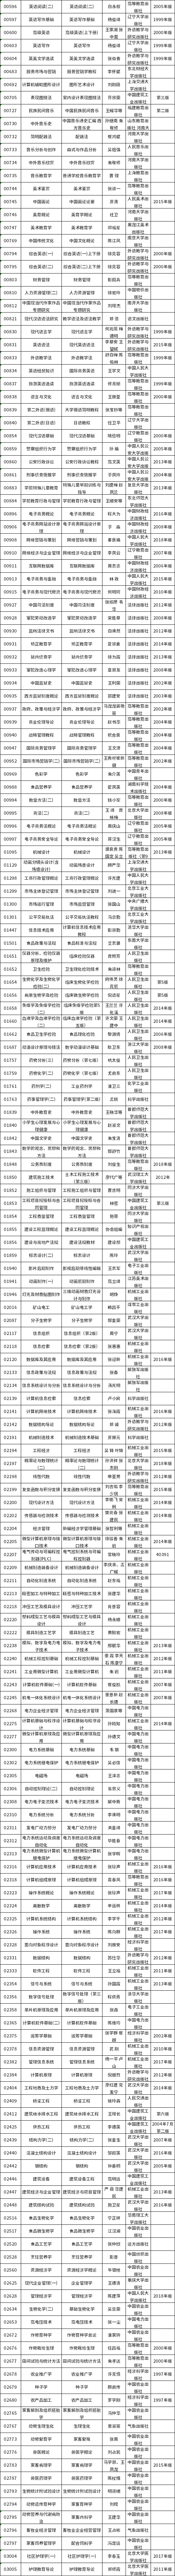 河南省2021年高等教育自学考试使用教材目录